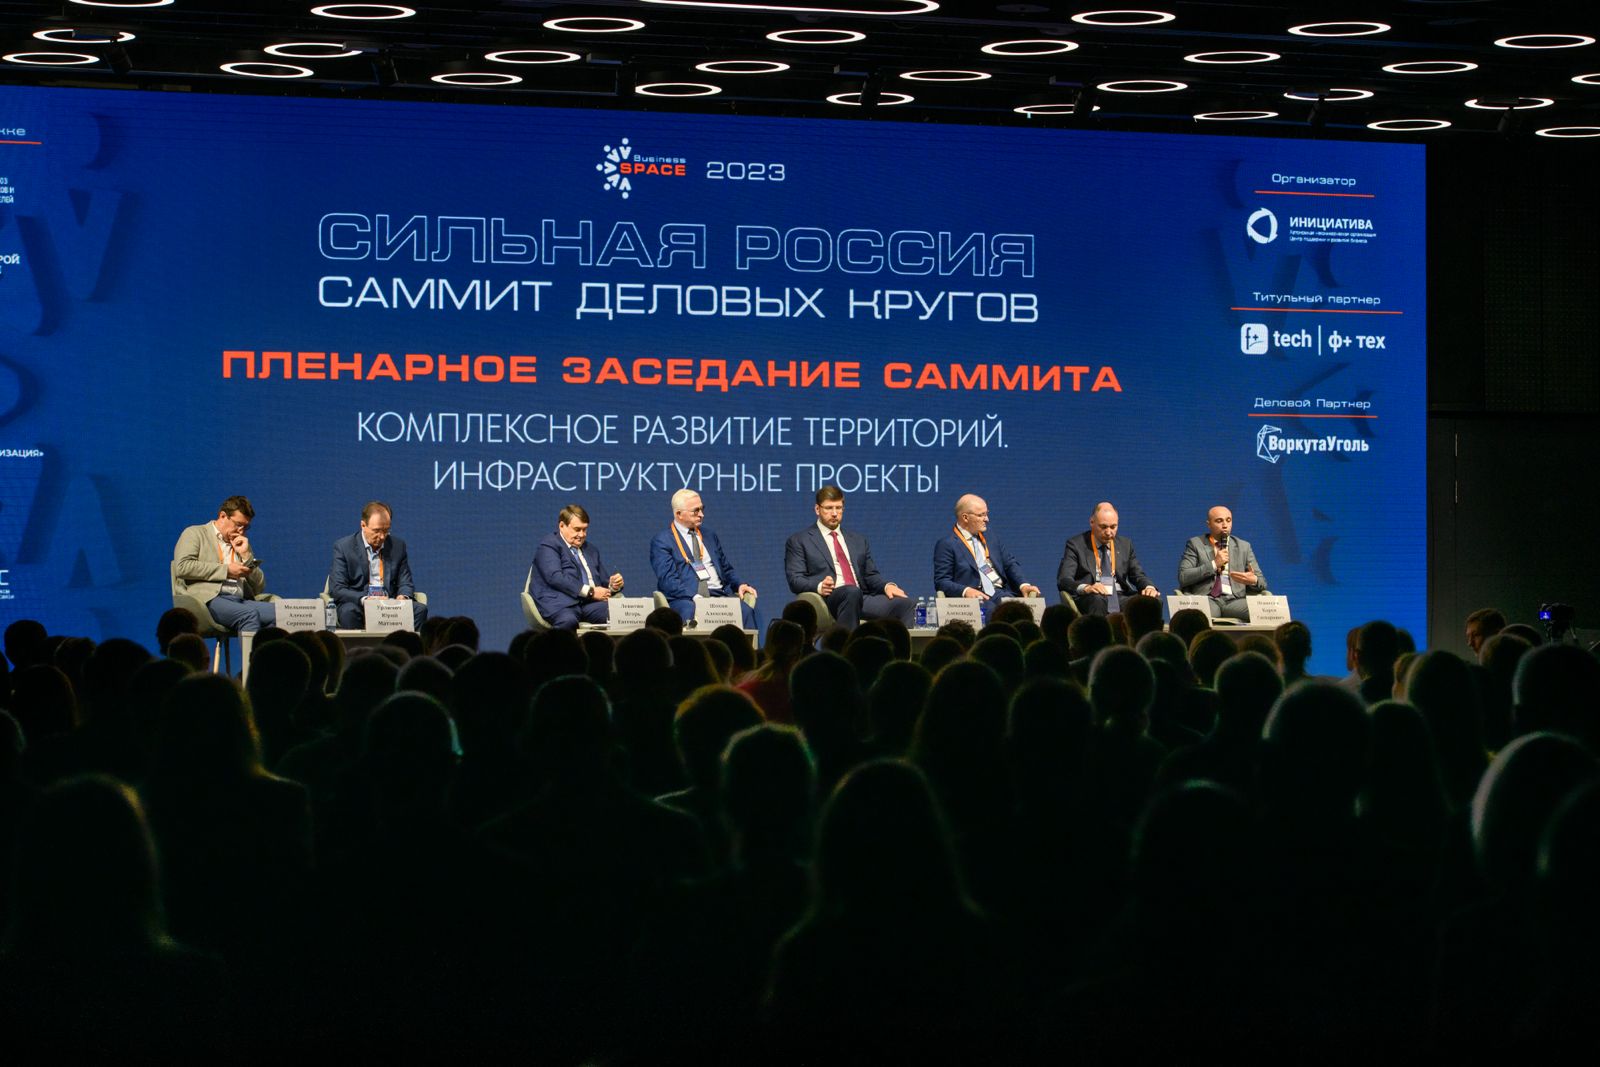 3 июля в рамках Саммита деловых кругов «Сильная Россия» состоится заседание Комиссии РСПП по строительному комплексу